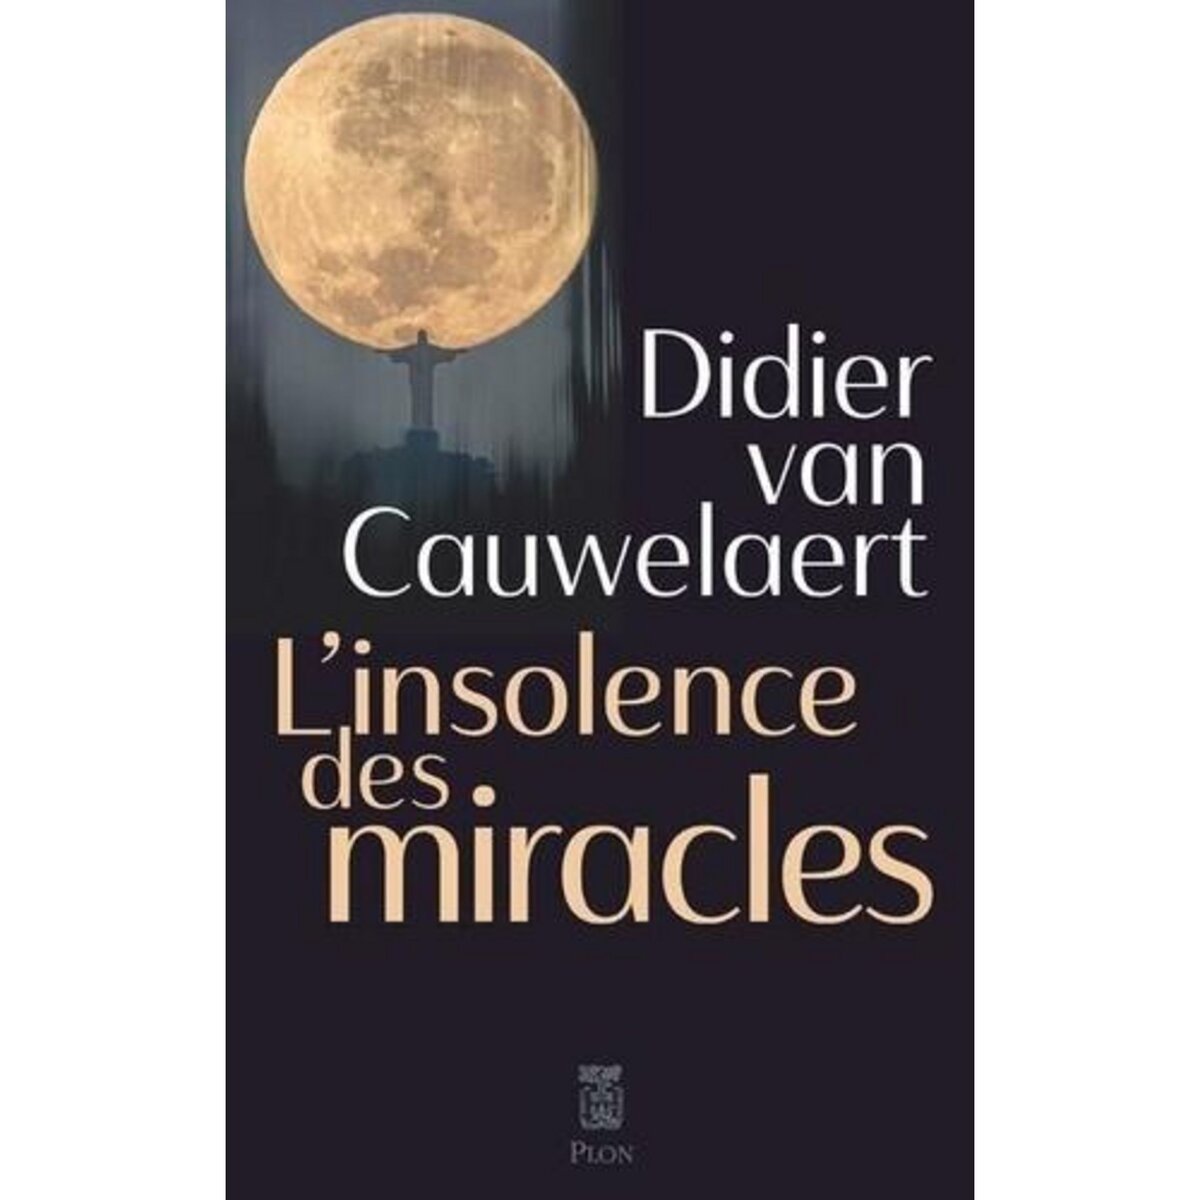  L'INSOLENCE DES MIRACLES, Van Cauwelaert Didier